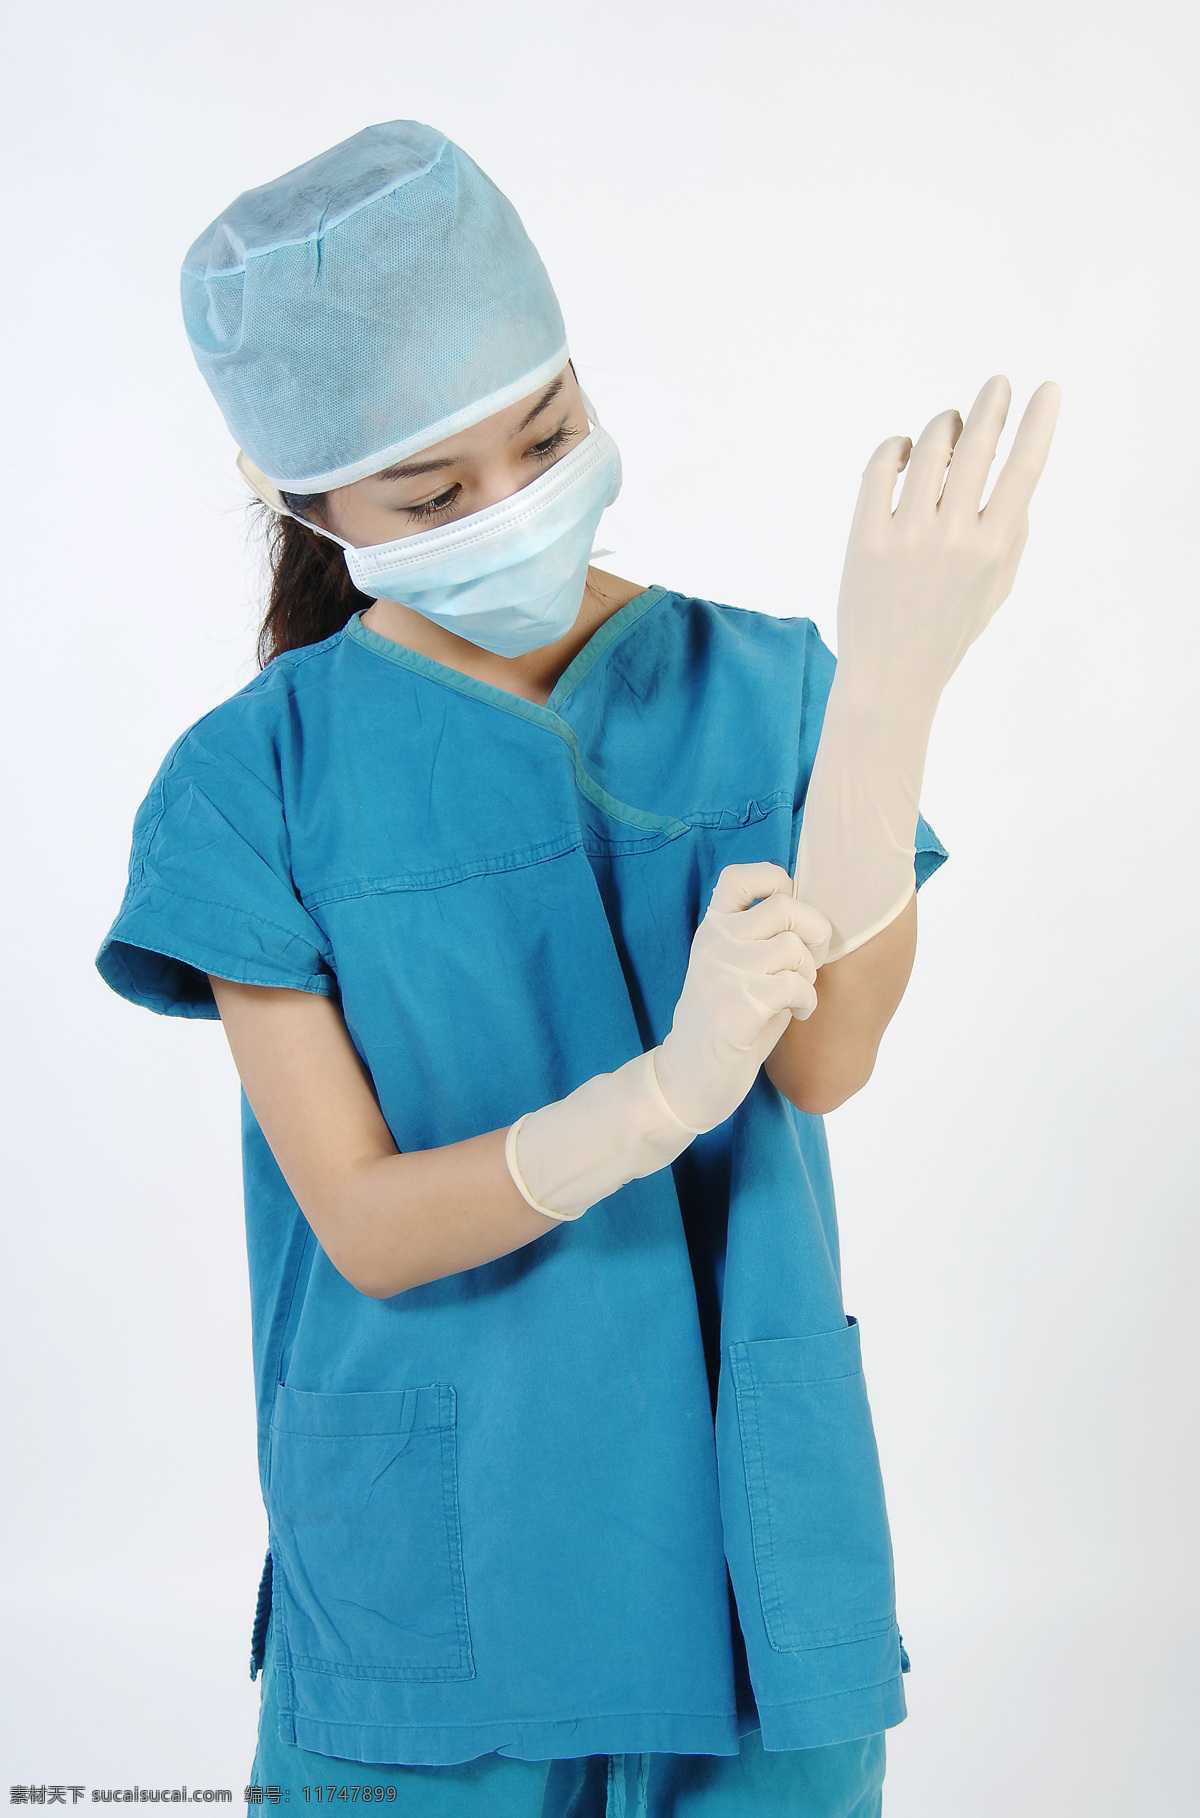 女医生 护士 医生 医疗 蓝色工作服 女性 女人 人物 职业人物 人物图库 高清图片 戴手套 口罩 商务人士 人物图片